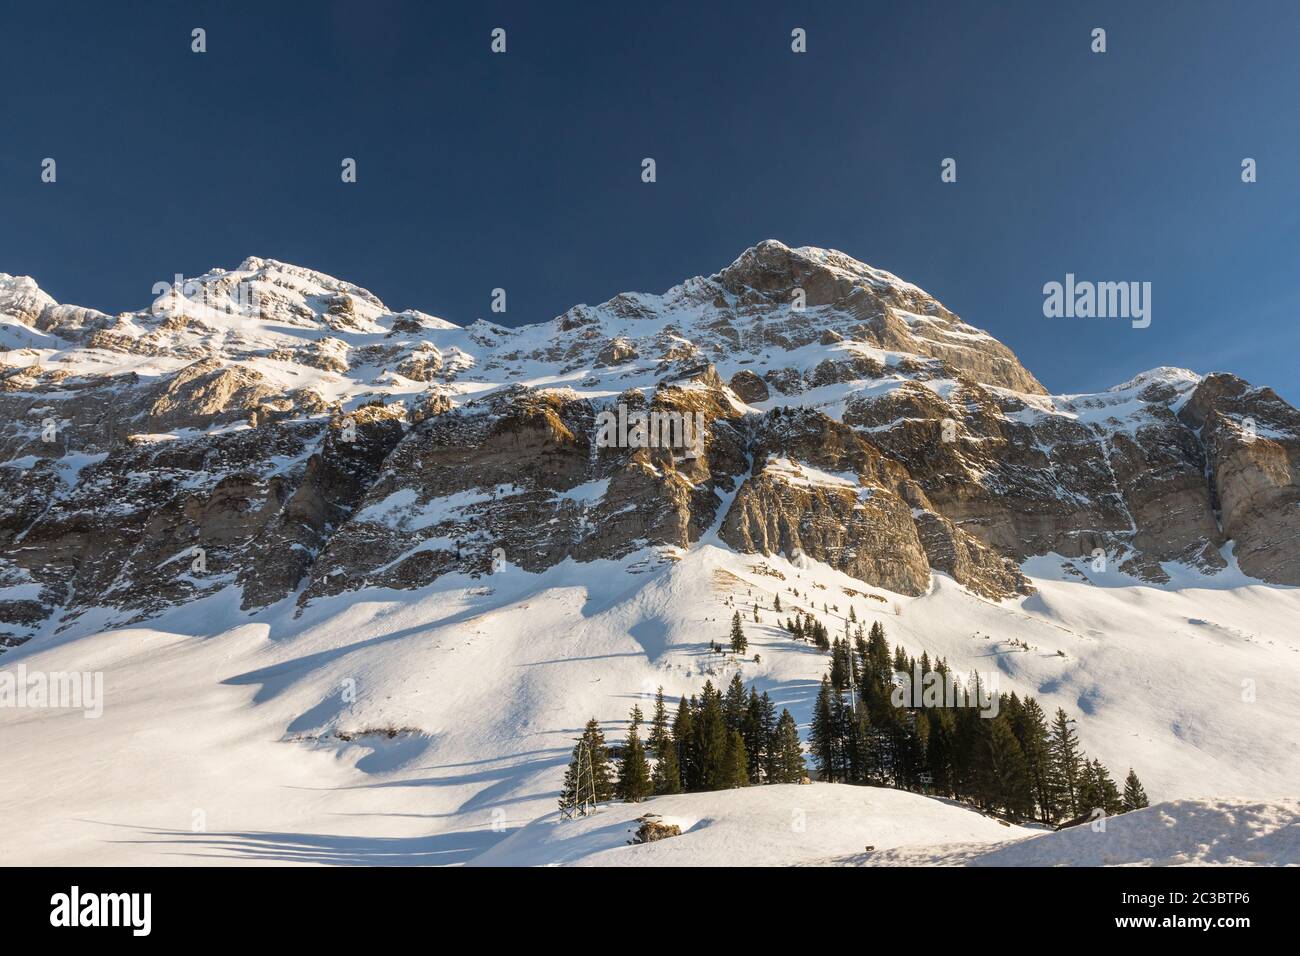 Winter landscape with view at Alpstein massif, Canton of Appenzell Ausserrhoden, Switzerland Stock Photo